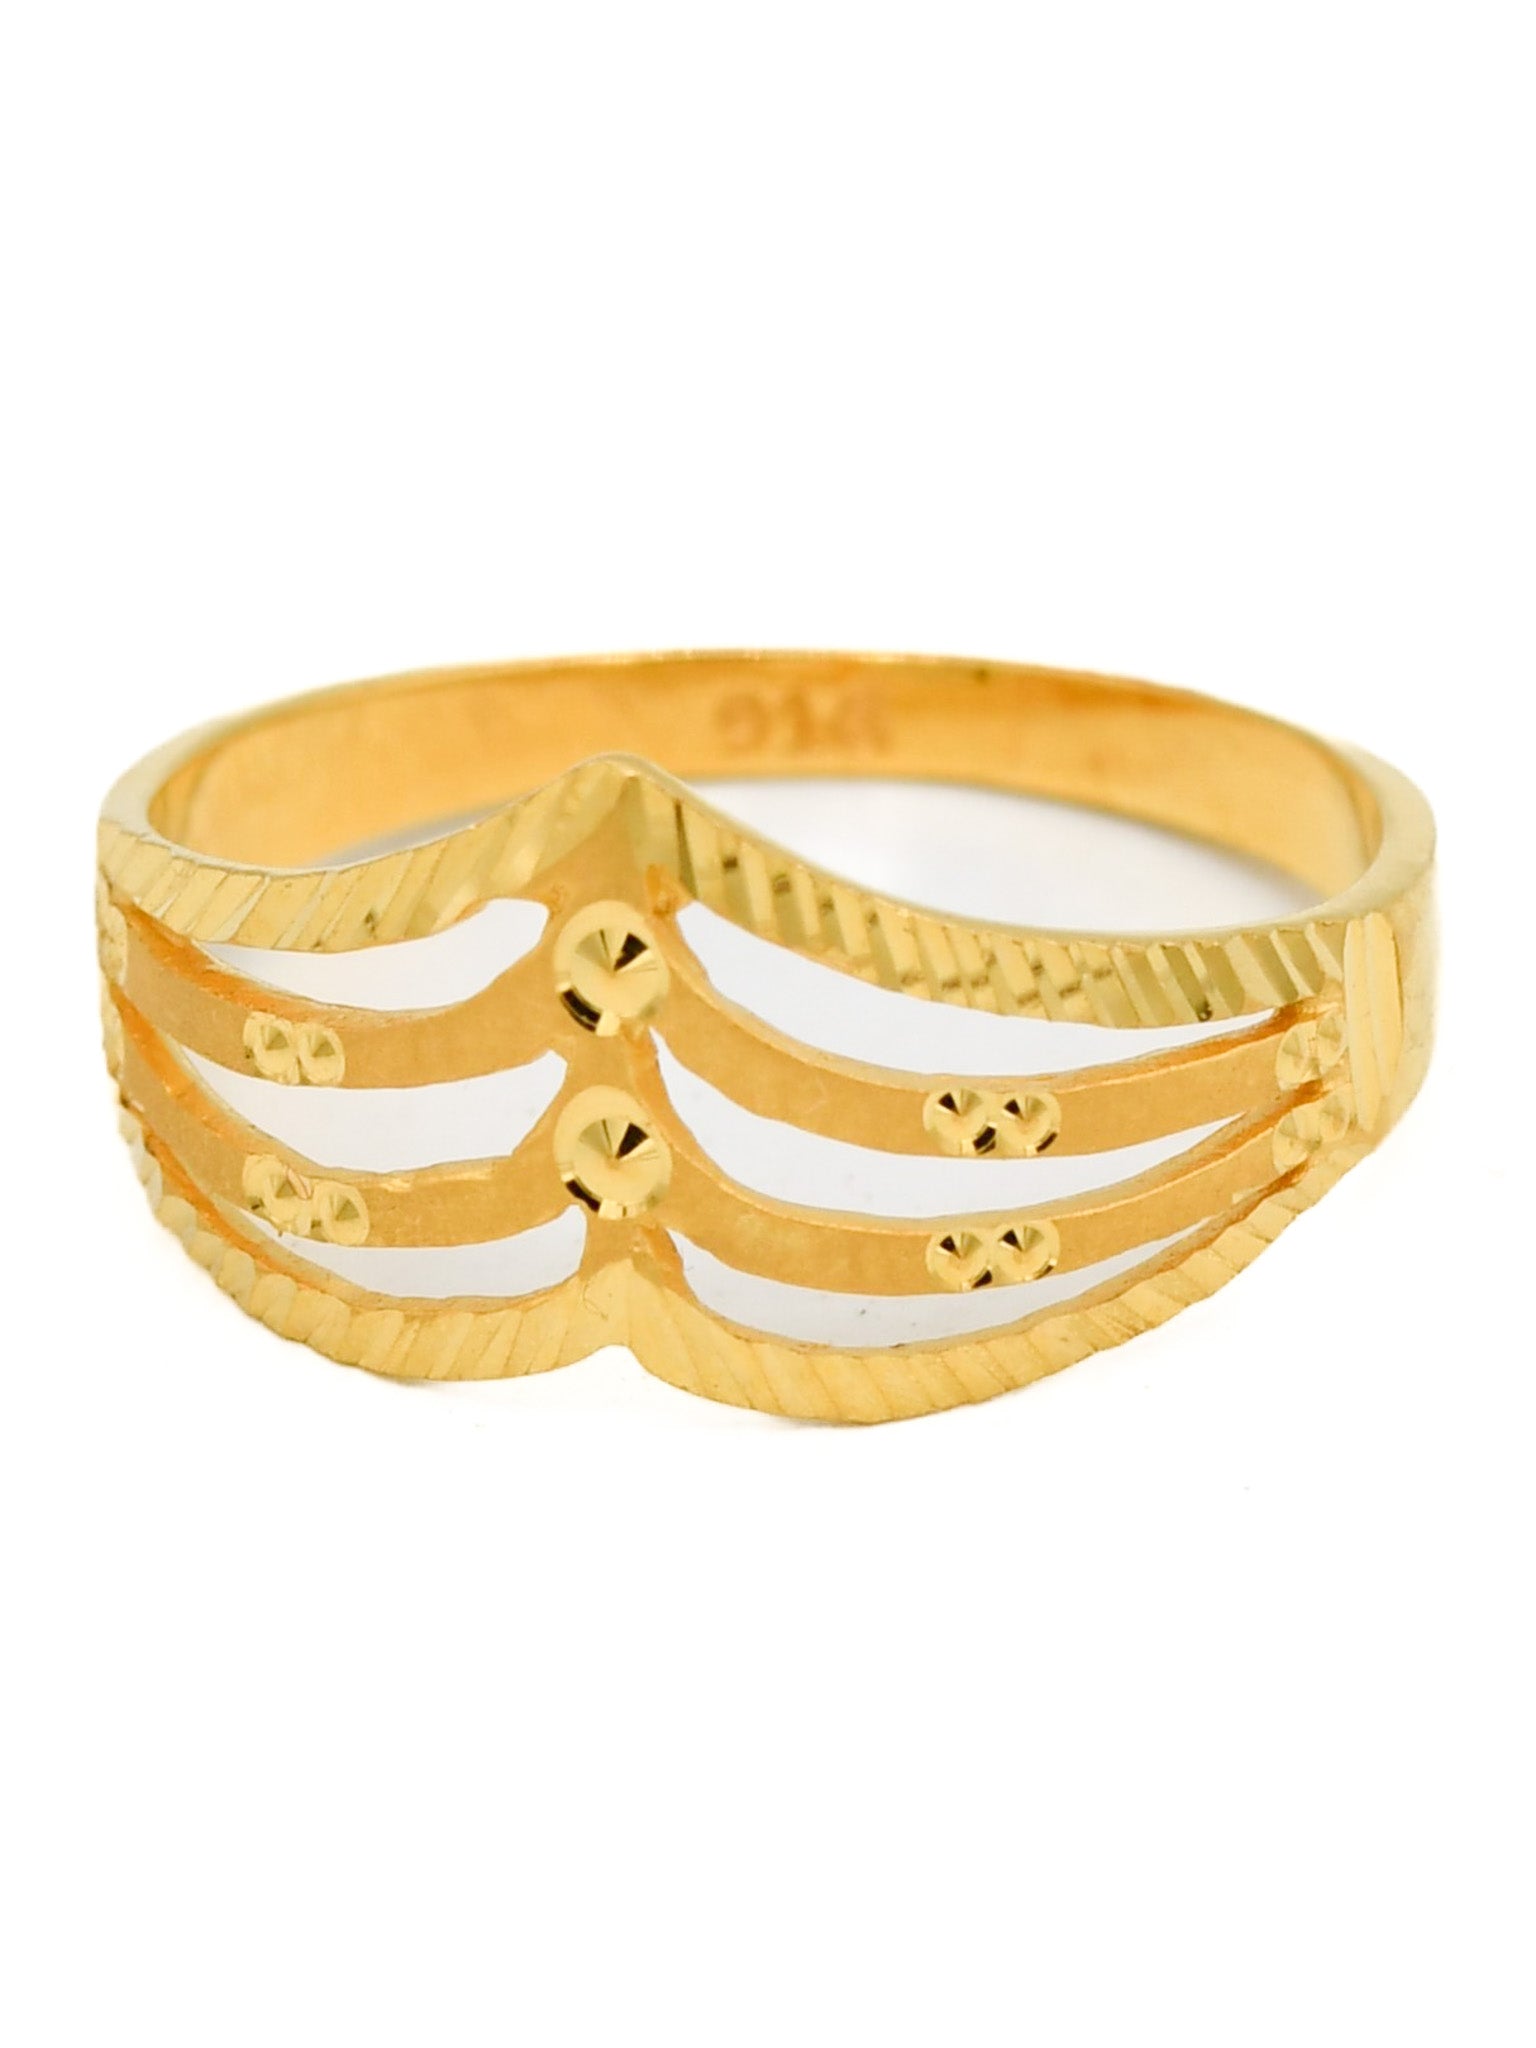 22ct Gold Ladies Ring - Roop Darshan